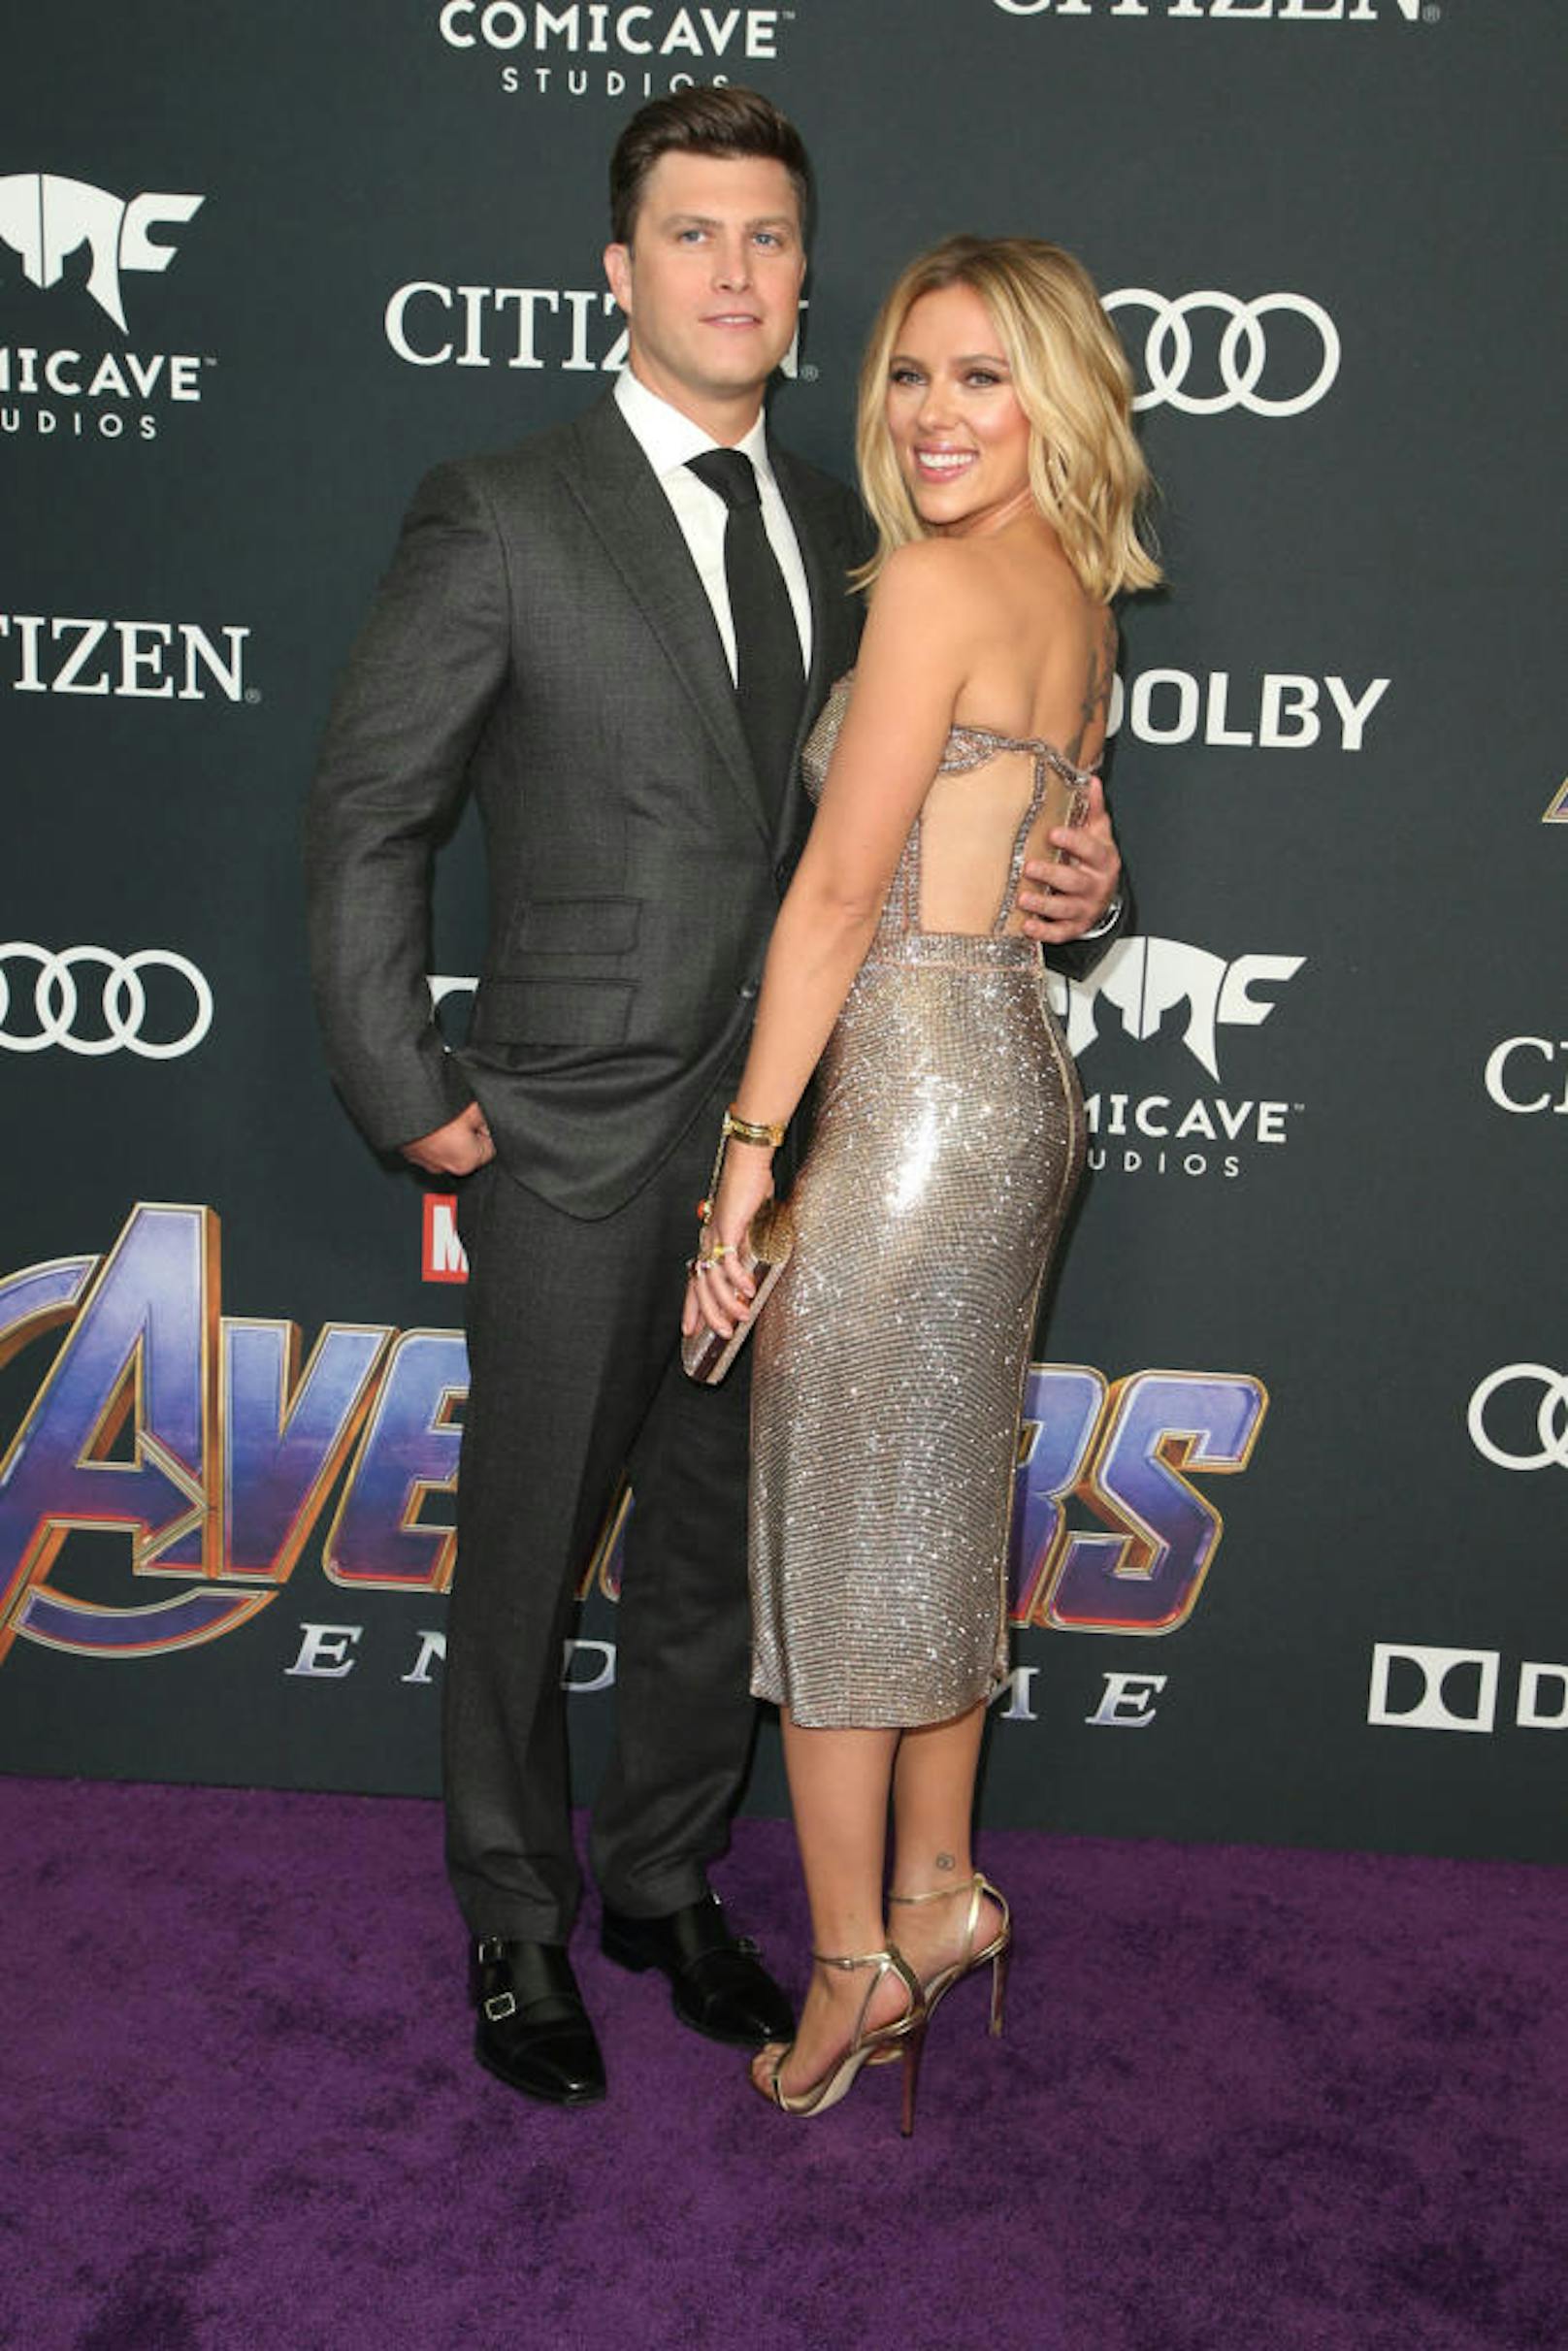 Colin Jost und Scarlett Johansson bei der Premiere von "Avengers: Endgame" in Los Angeles.